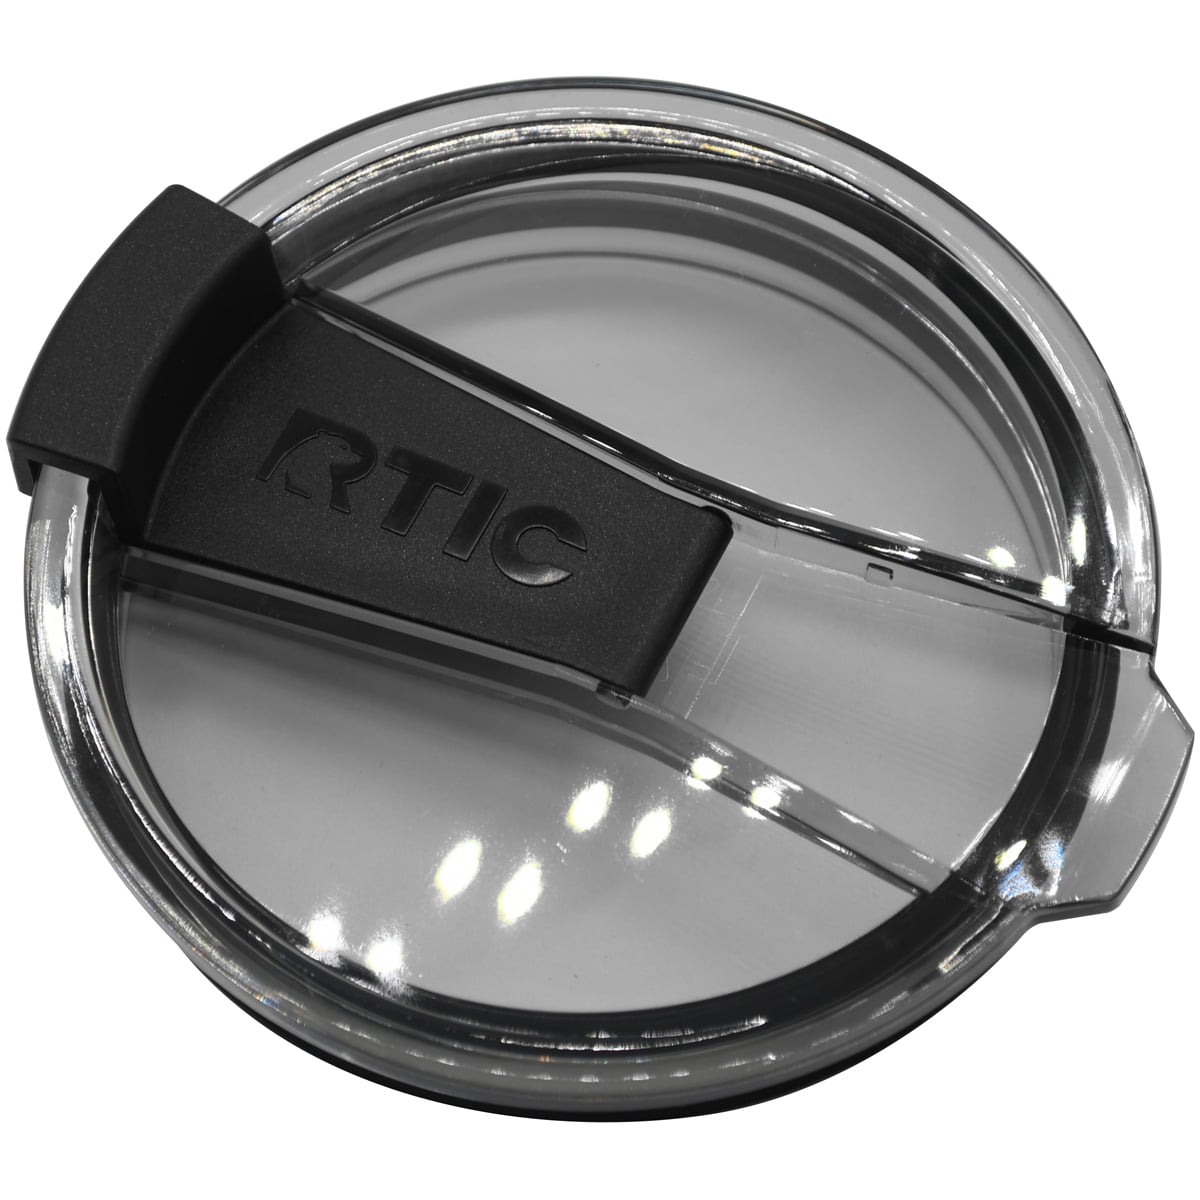 RTIC - Tumbler 20oz – Threadfellows